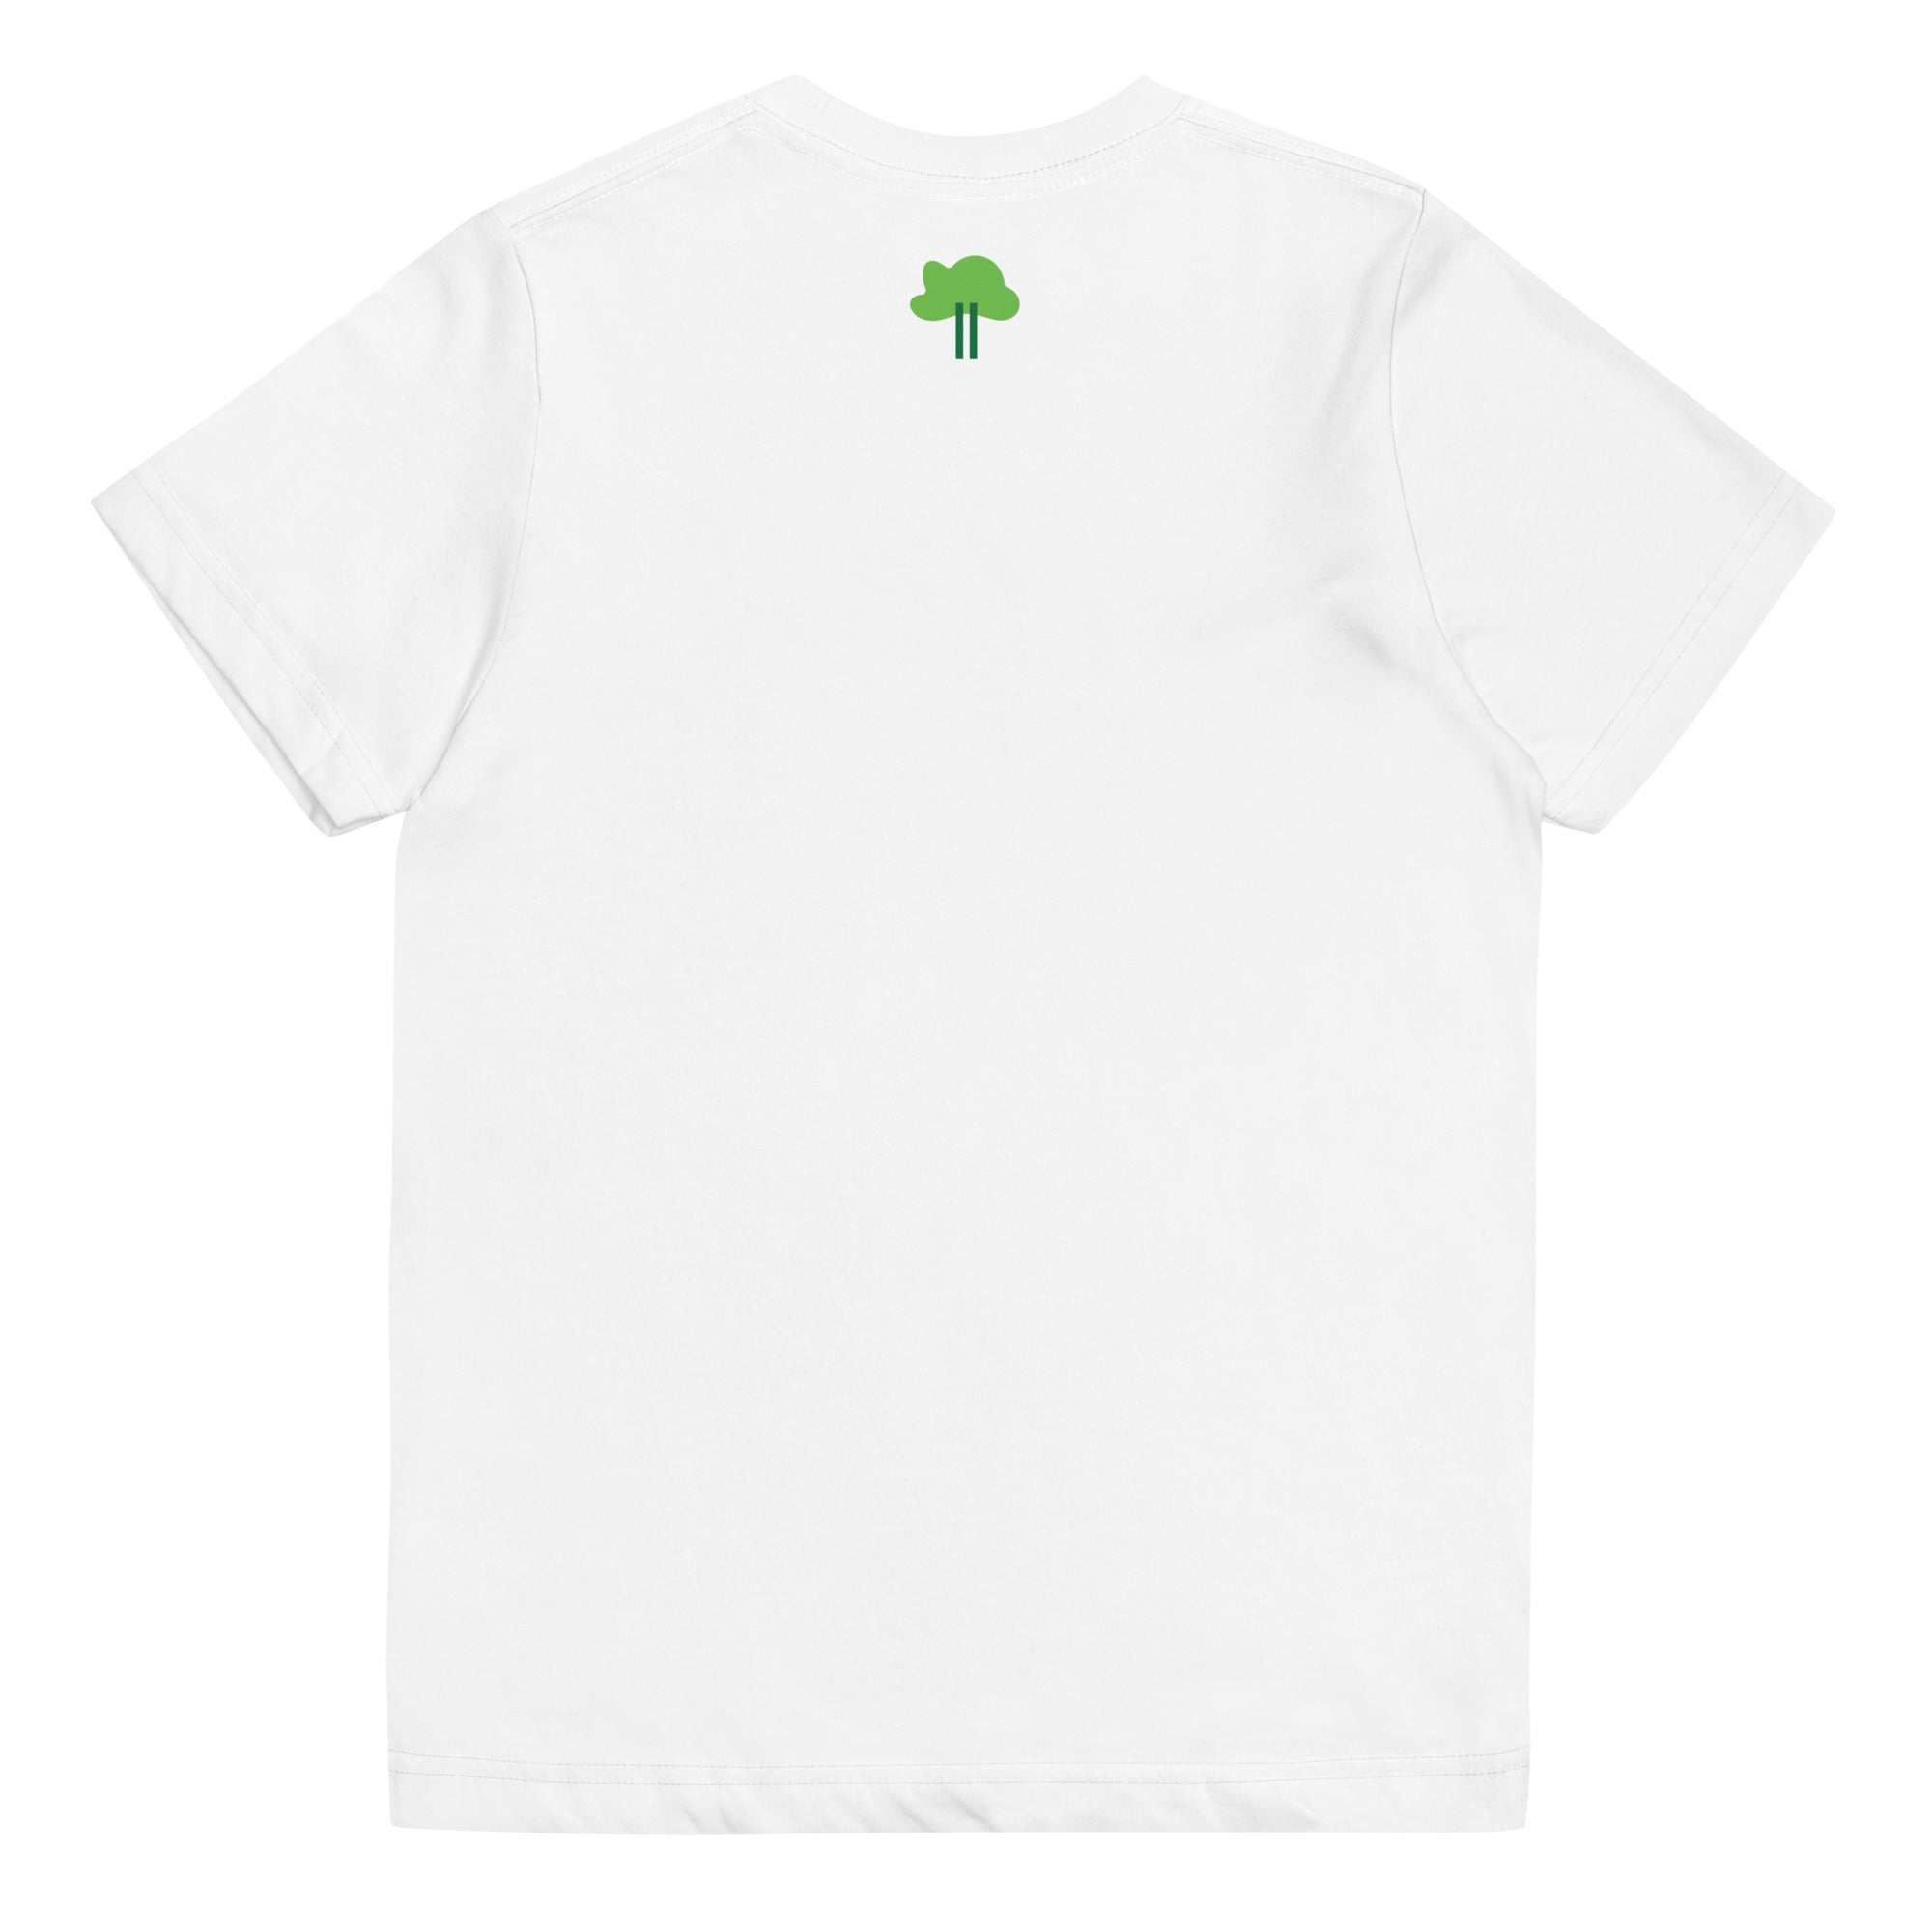 I Temp - Sabana - K2 | Youth jersey t-shirt